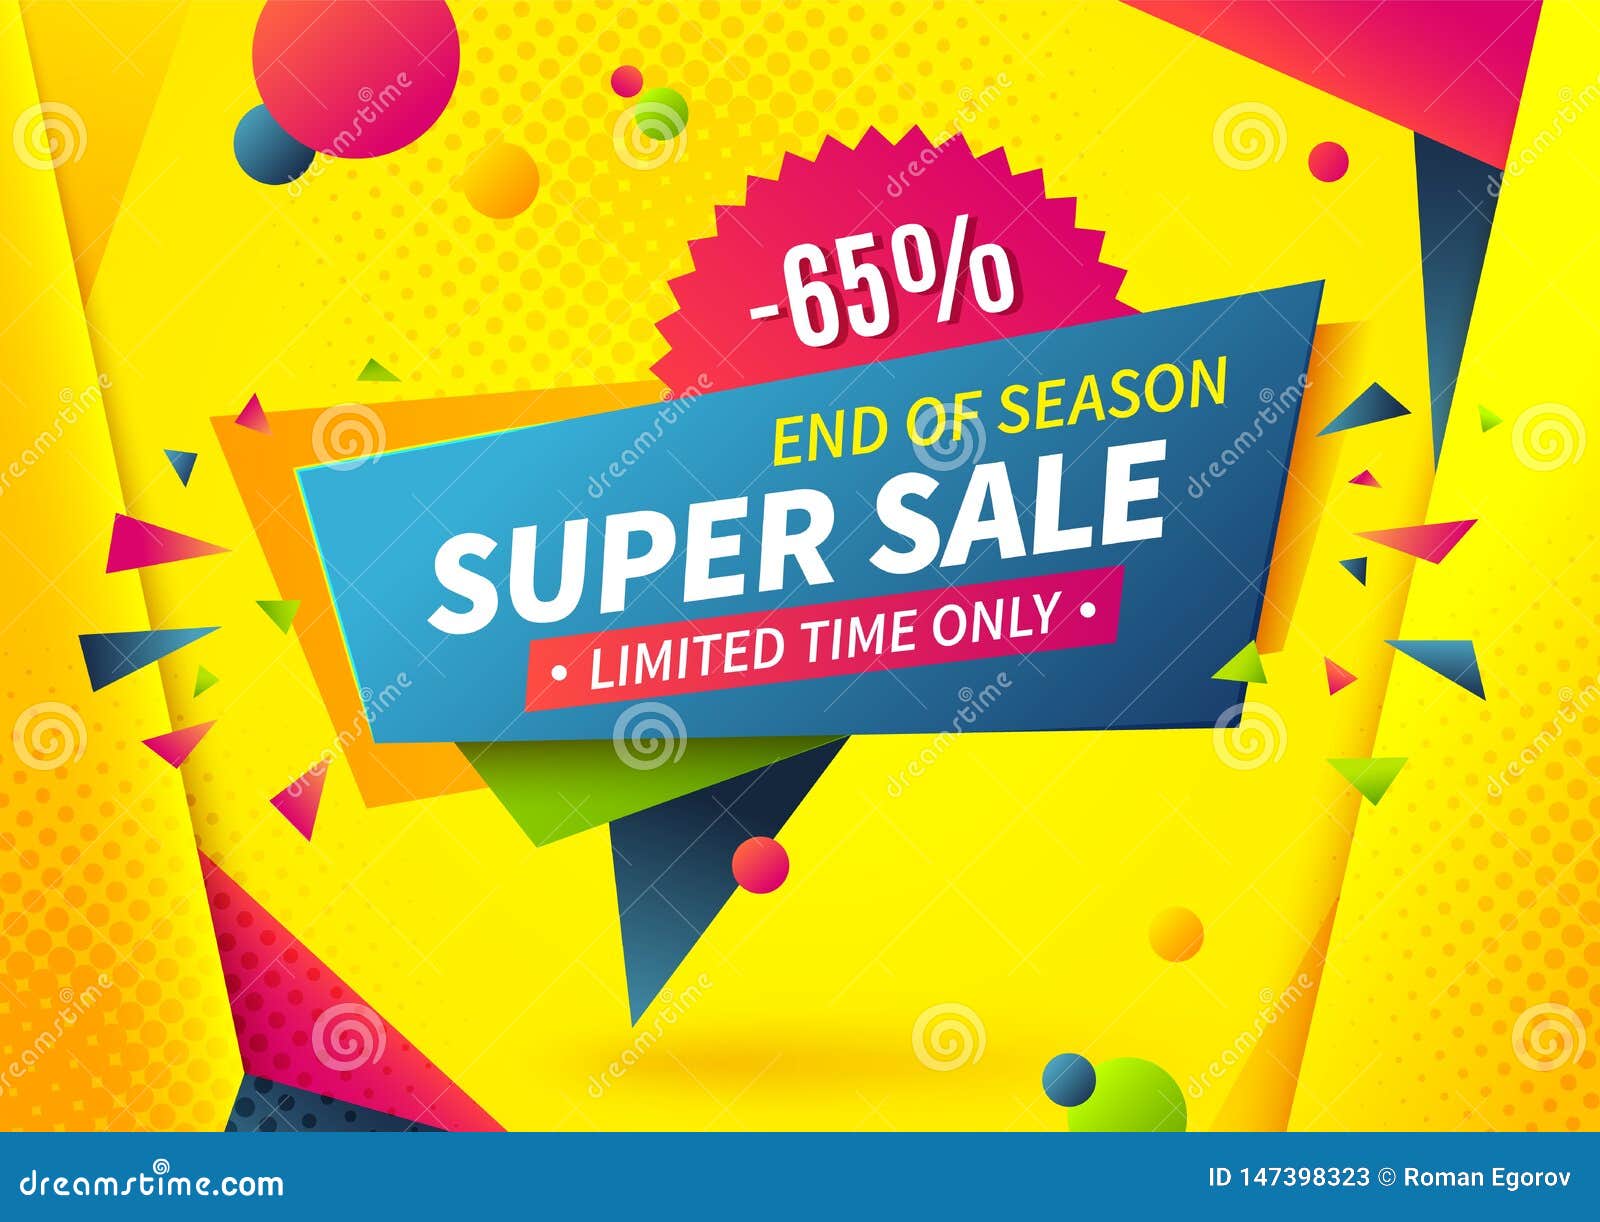 https://thumbs.dreamstime.com/z/sale-banner-special-offer-logo-weekend-promotion-label-design-template-super-deal-tag-vector-summer-shop-discount-shape-blue-147398323.jpg